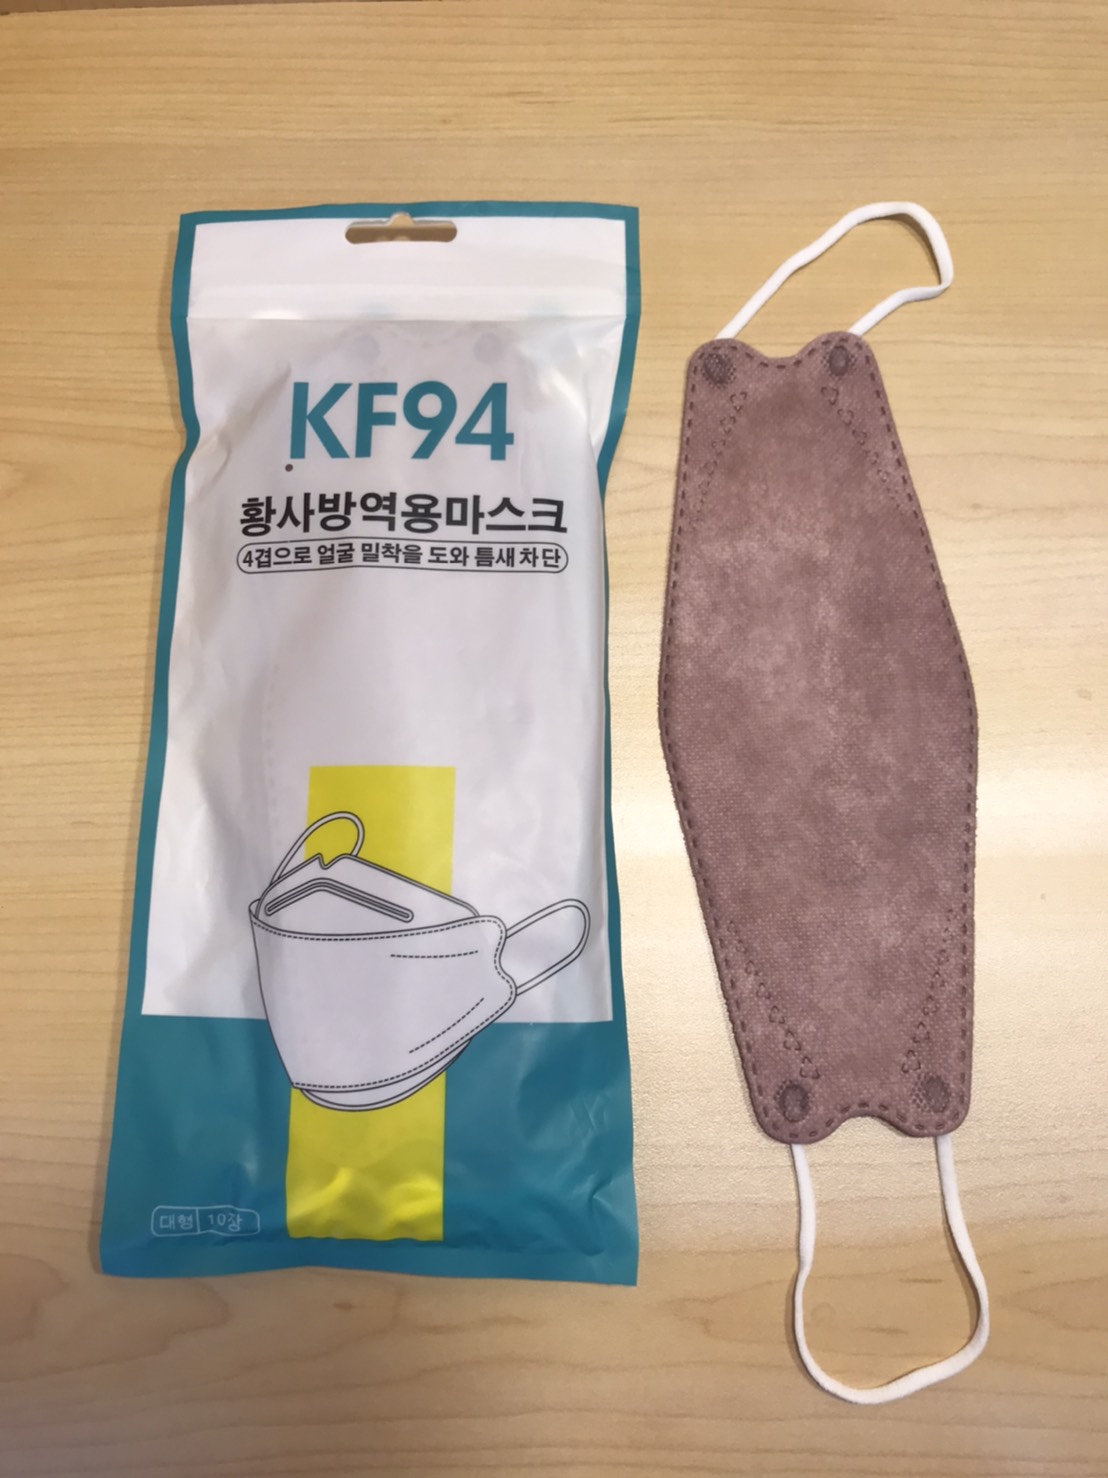 หน้ากากอนามัย KF94 กันฝุ่น กันเชื้อโรค 1 แพ็ก 10 ชิ้น / แอลกอฮอล์แบบขวด 100 ml.